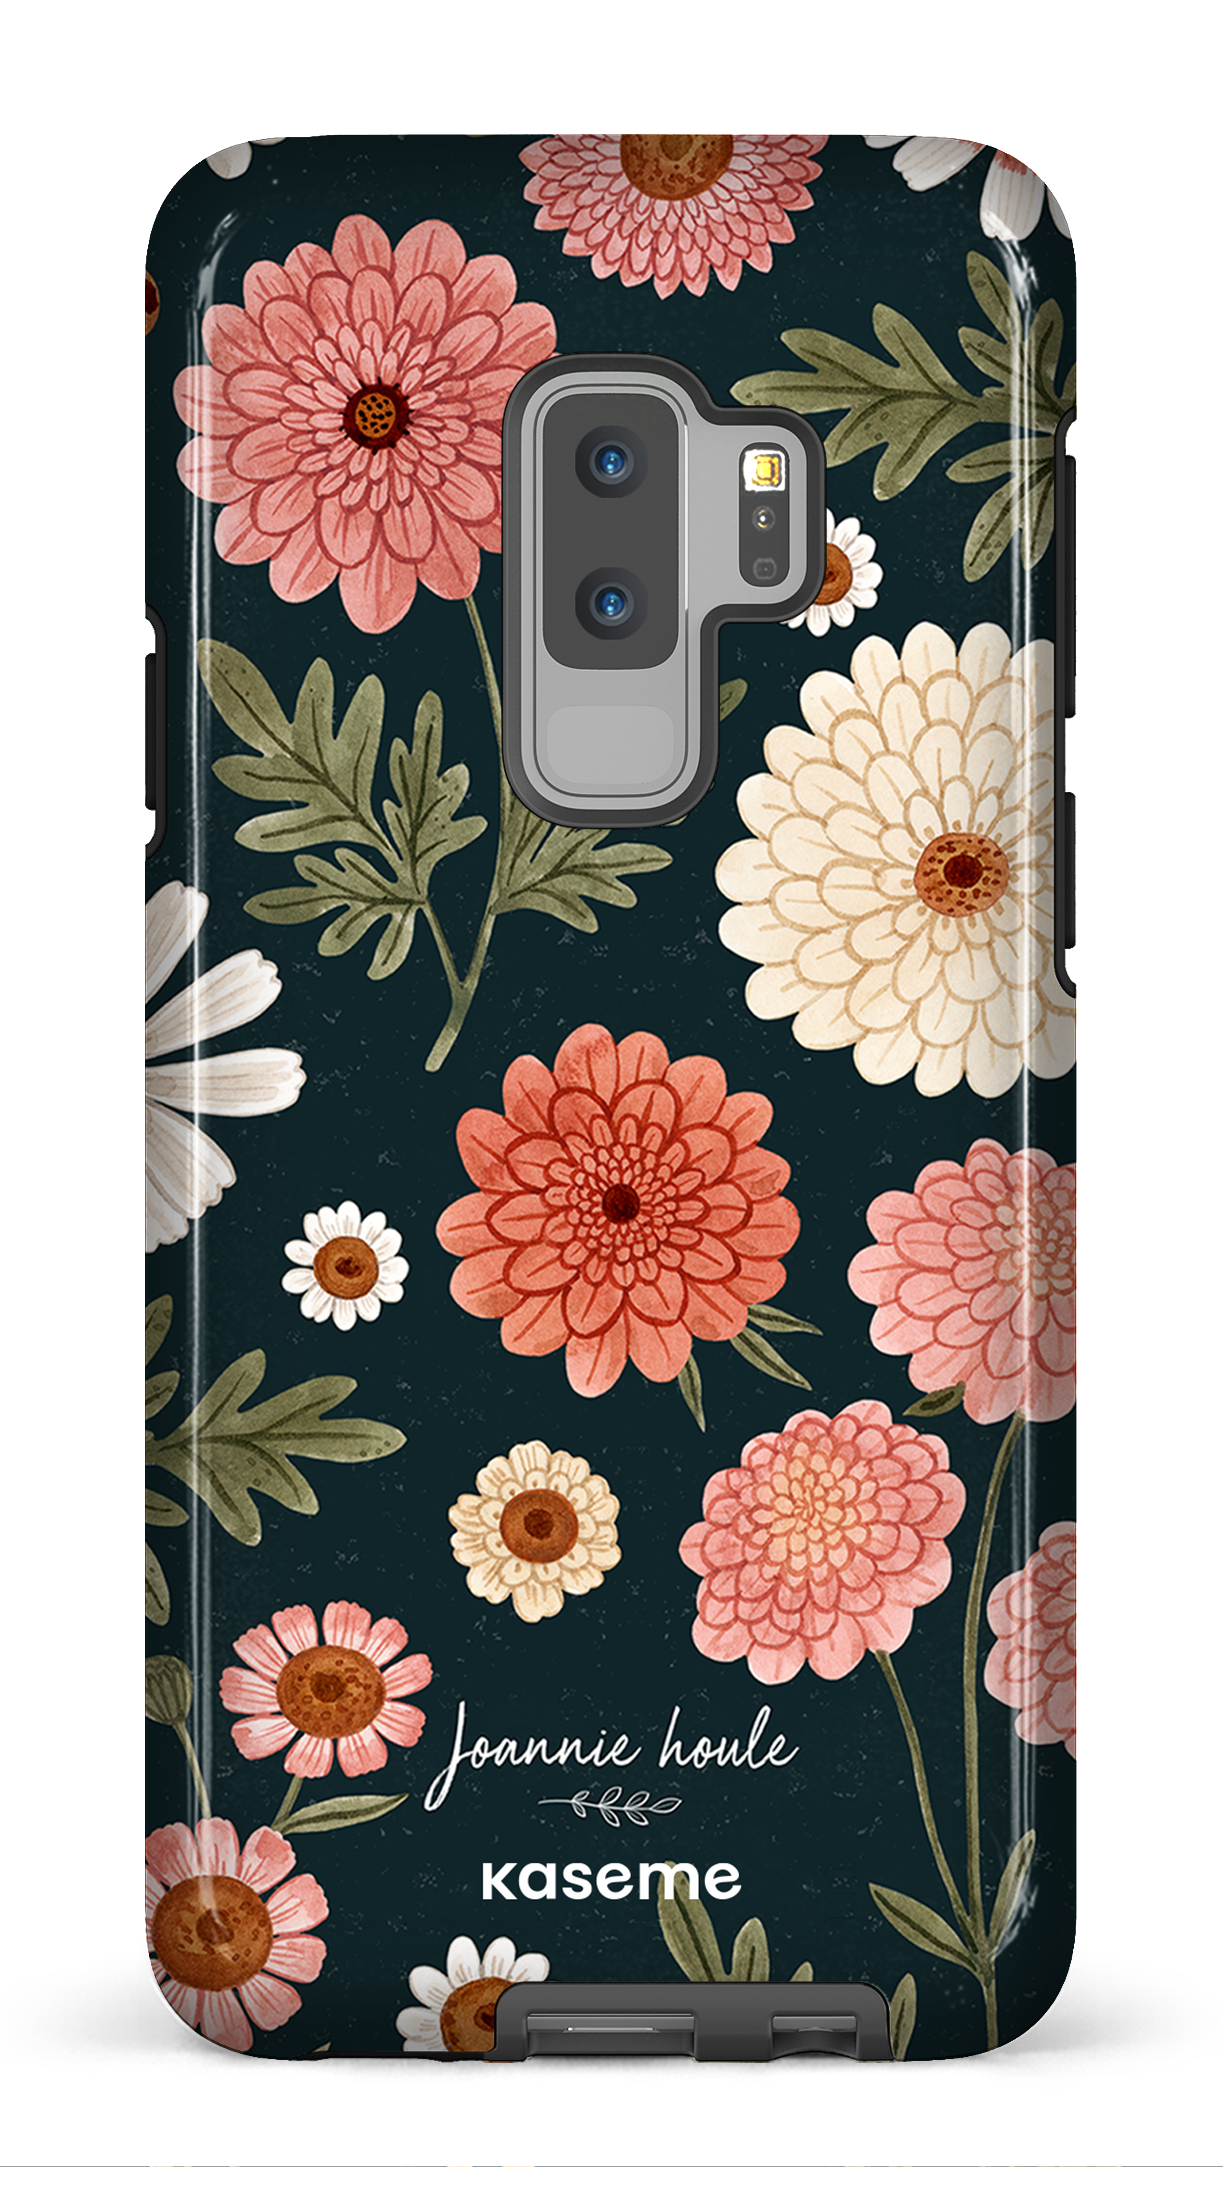 Chrysanthemums by Joannie Houle - Galaxy S9 Plus